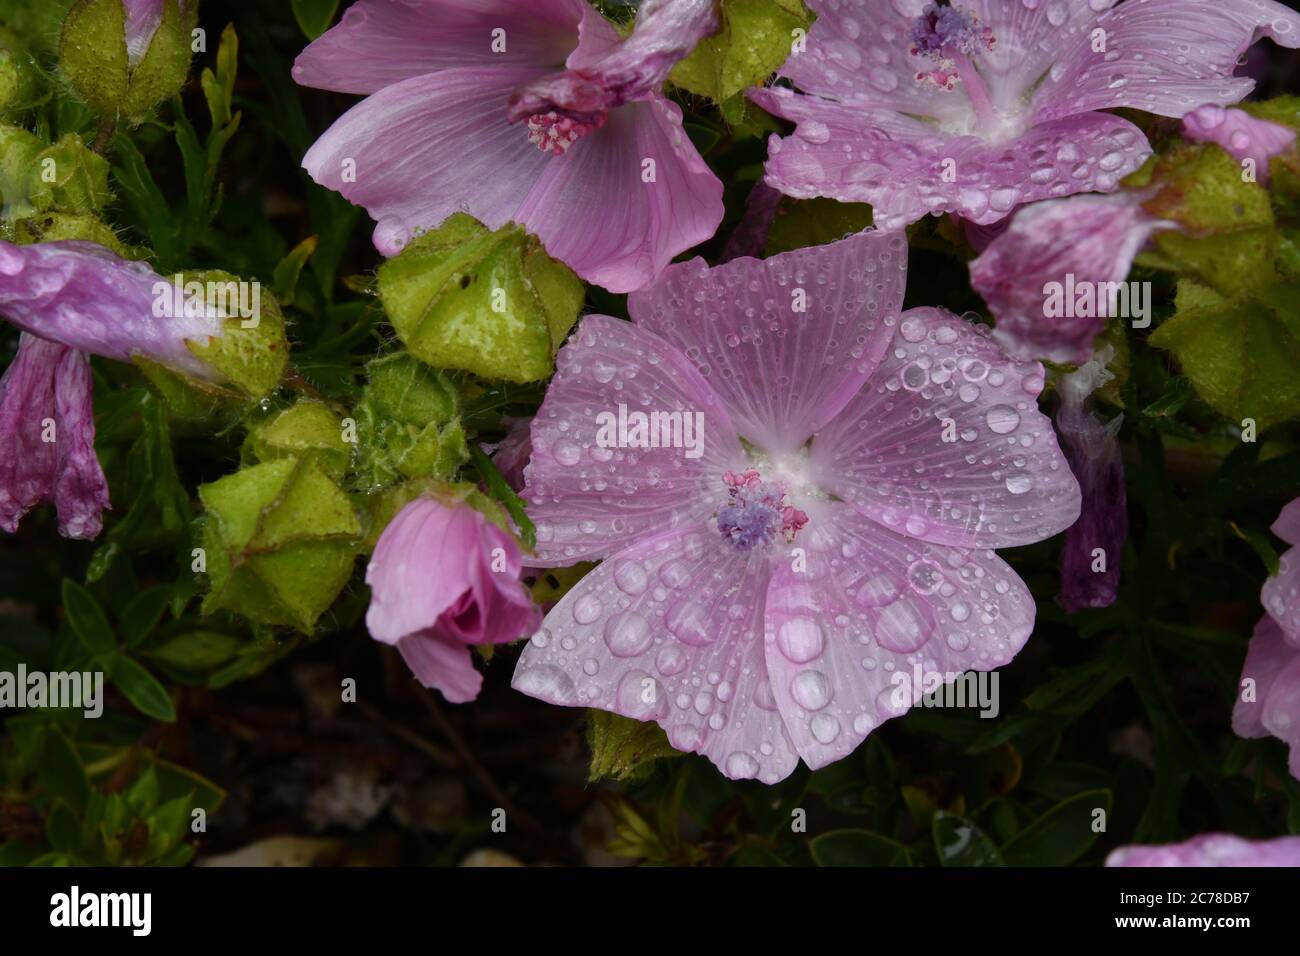 Primo piano di un mallow Musk (Malva moschata) fiore coperto di gocce d'acqua dopo una doccia a pioggia con semi cialde vicino.Frome. Somerset.UK Foto Stock